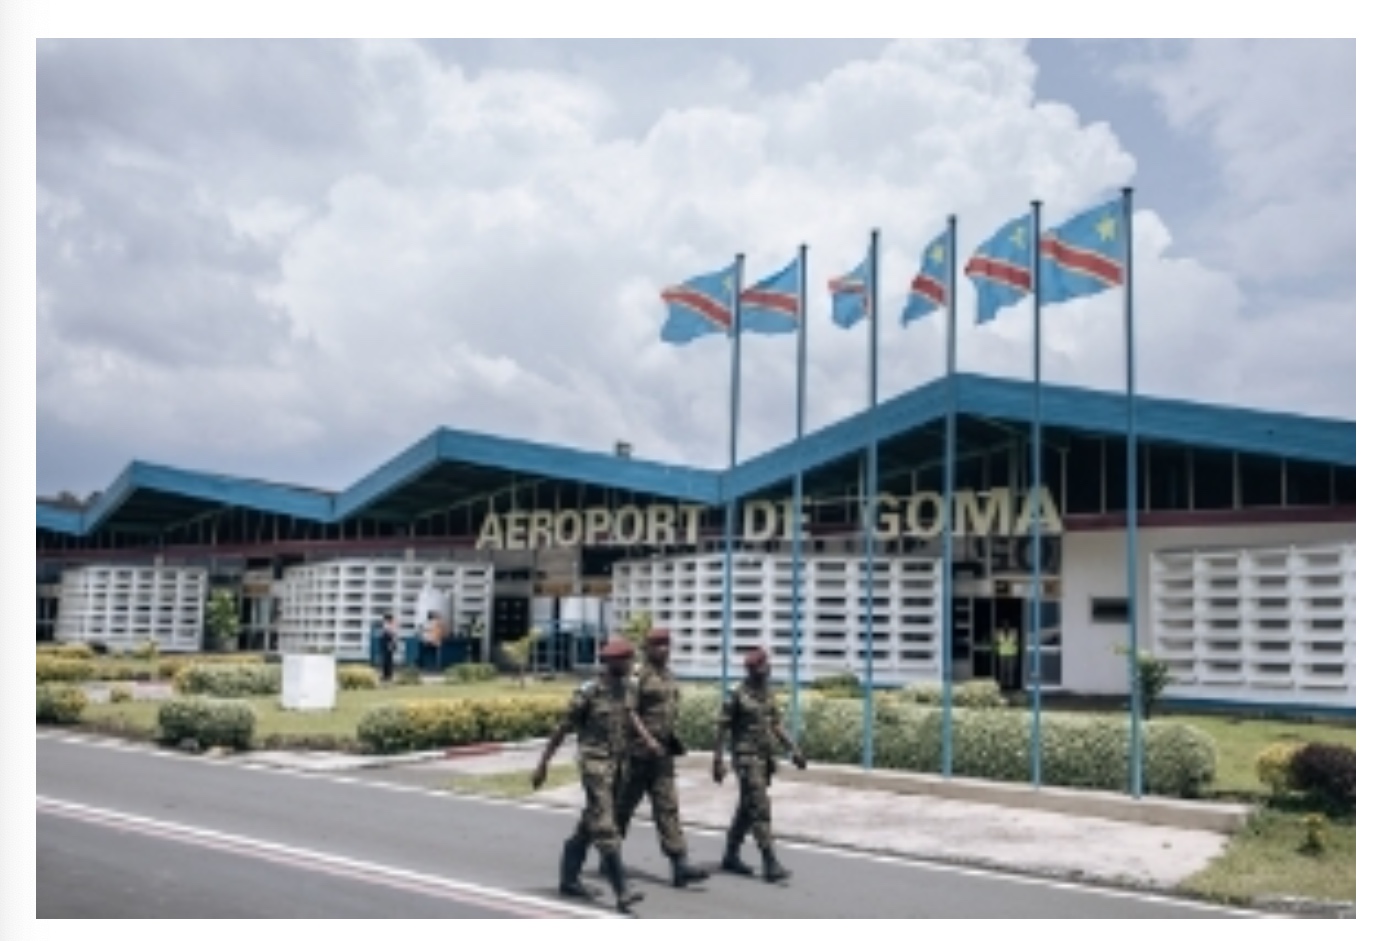 Aeroport de Goma